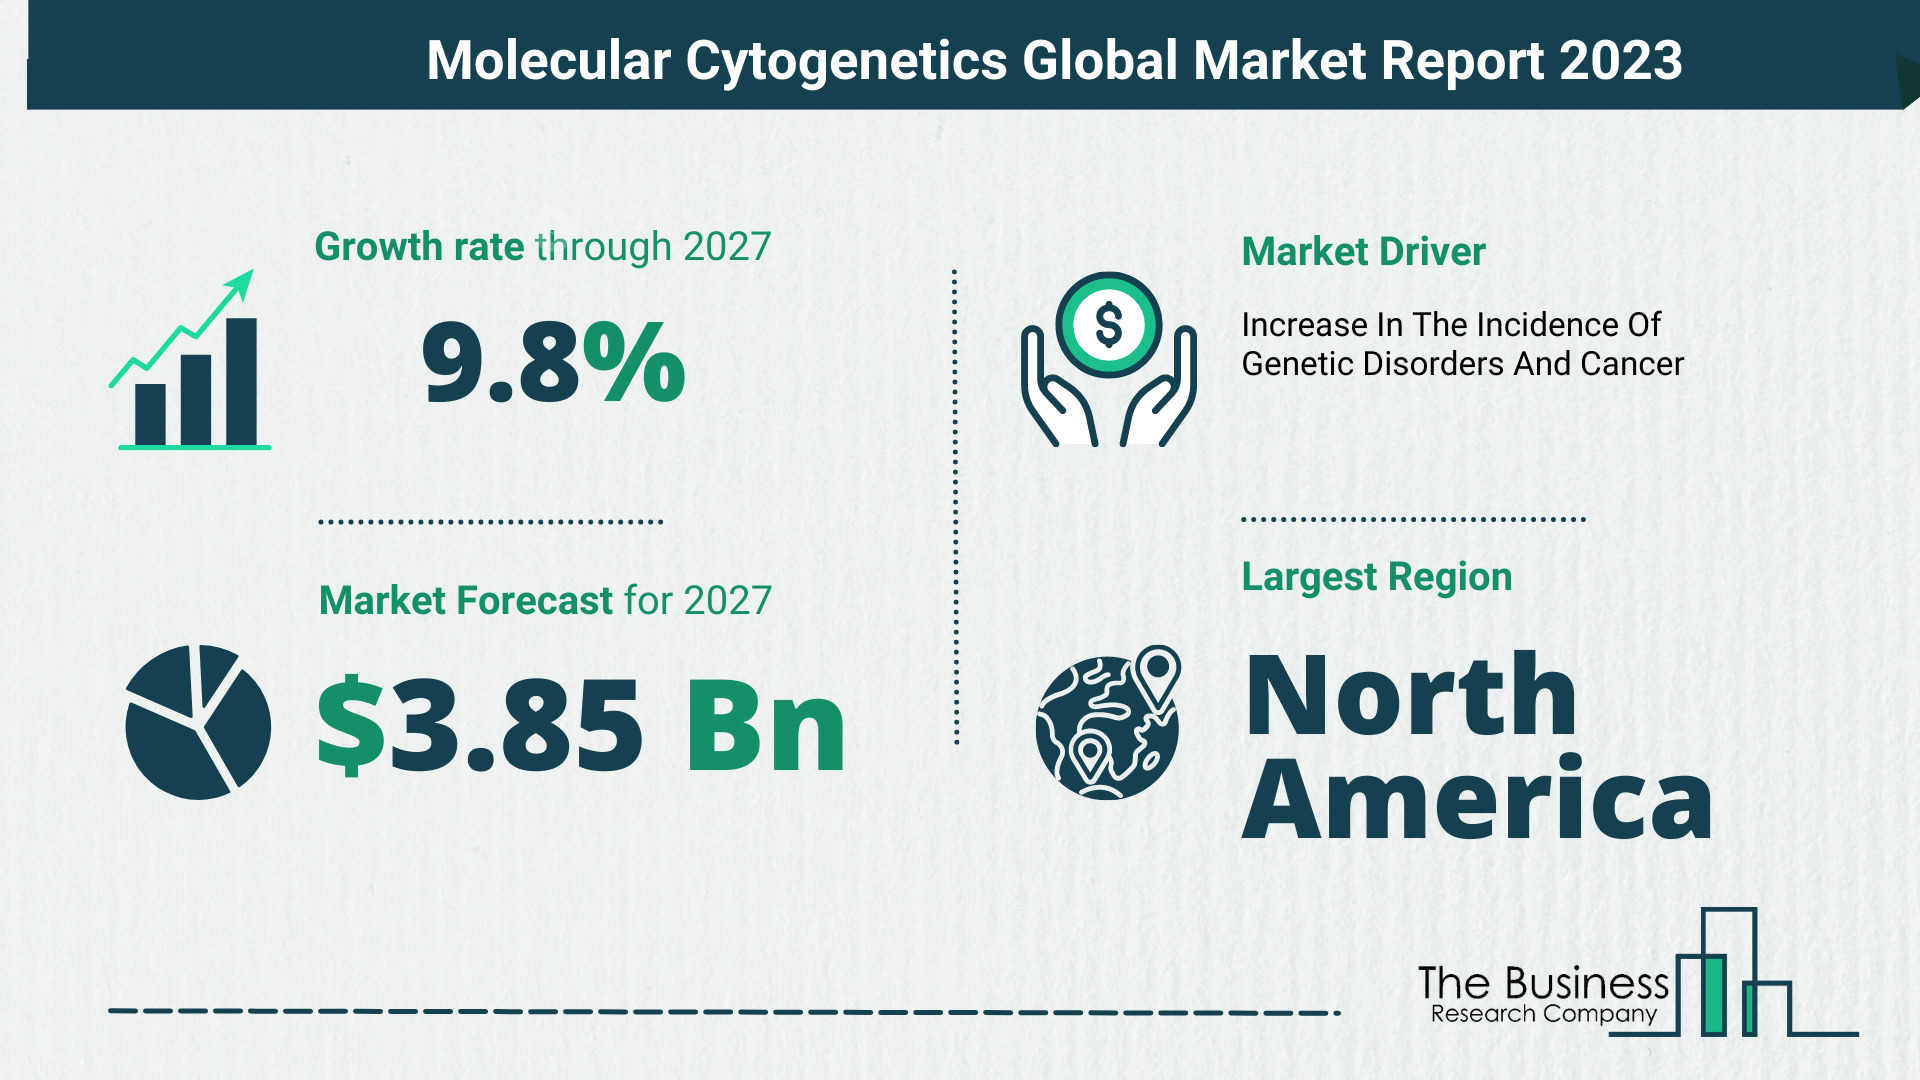 Global Molecular Cytogenetics Market Size